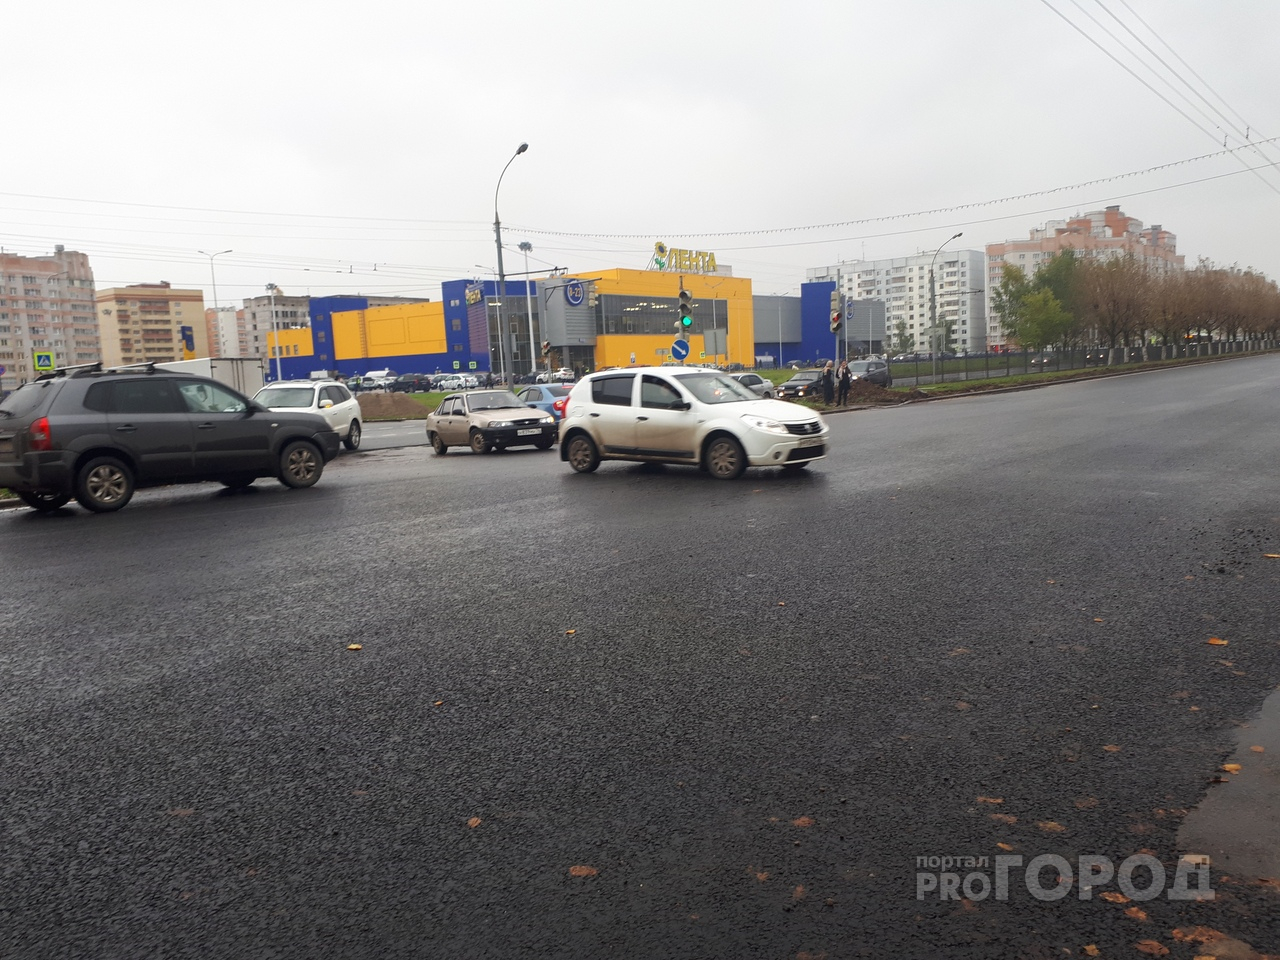 Эксперты: в Ярославле жители начали скупать дорогие автомобили